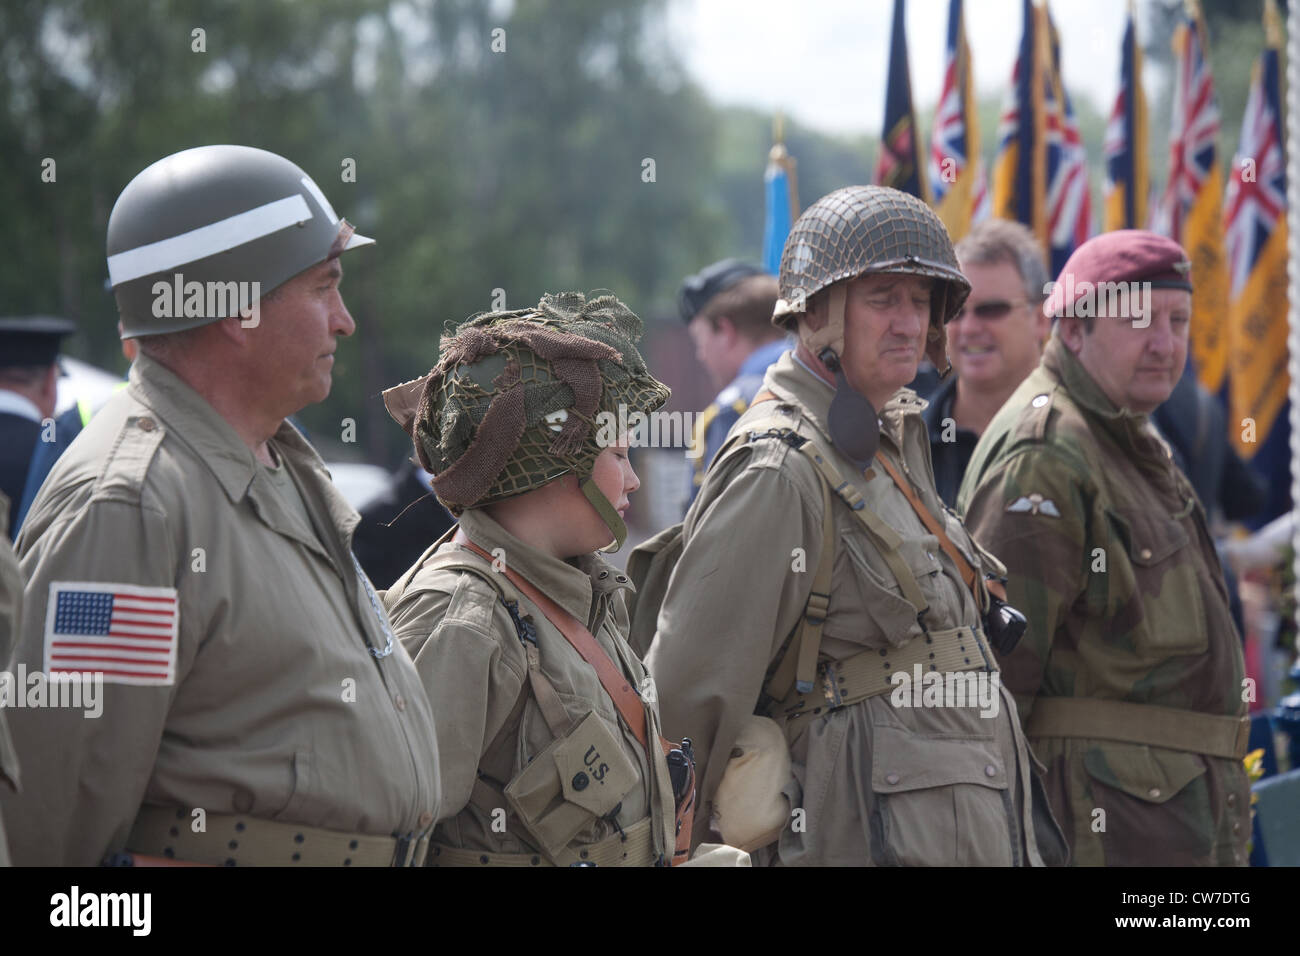 La reconstitution médiévale jouer 1940 soldats de l'Armée britannique et américain avec d'autres personnes à la parade Banque D'Images